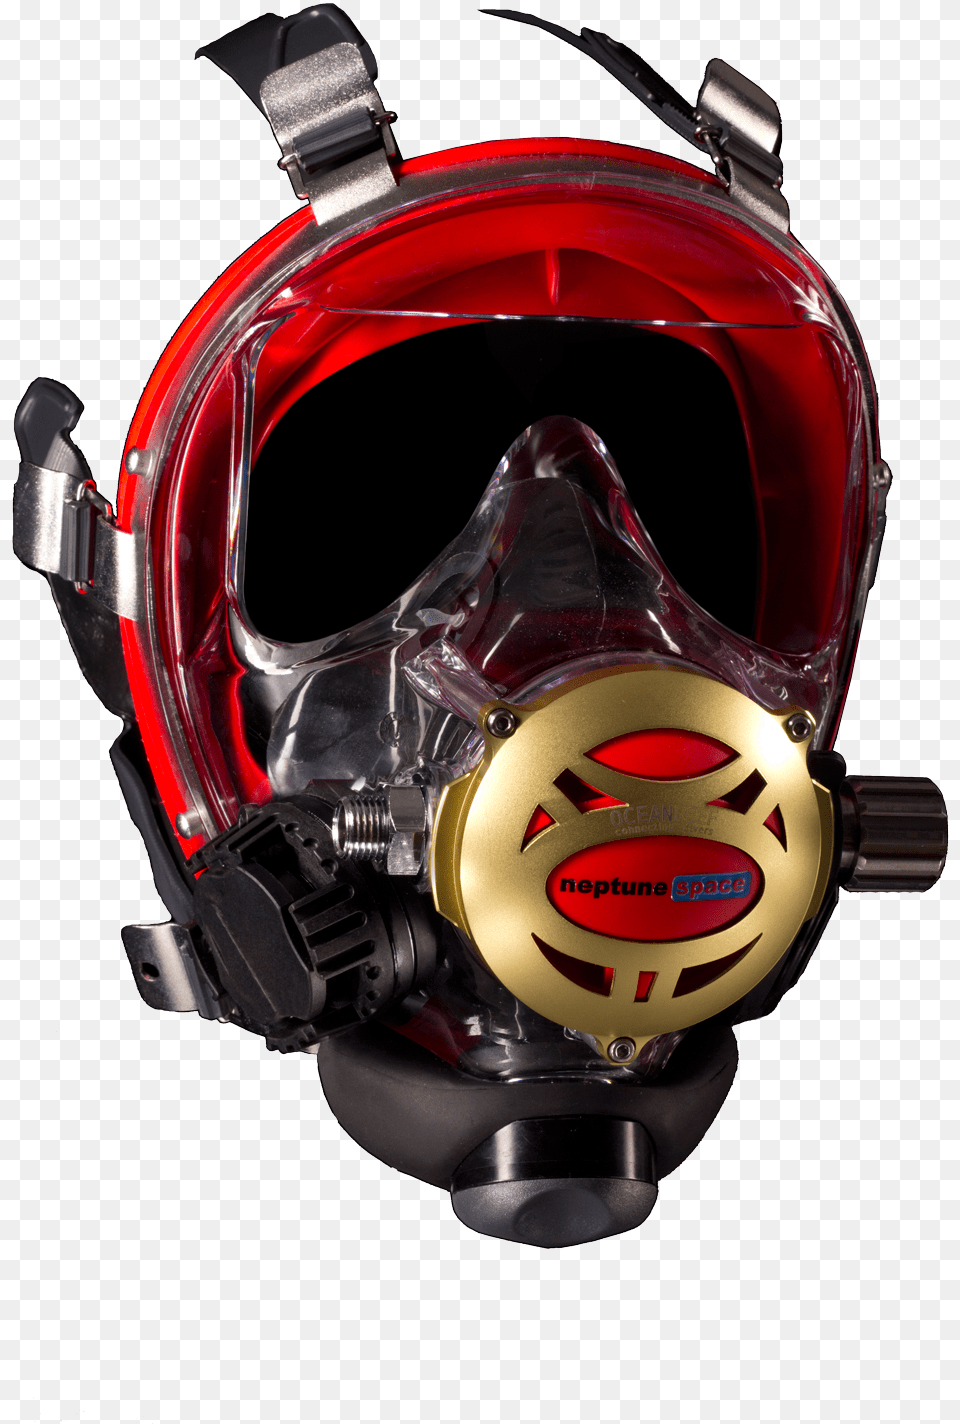 Ocean Reef Neptune Space Iron Mask Ocean Reef Neptune Space Predator, Accessories, Goggles, Helmet, Electronics Free Png